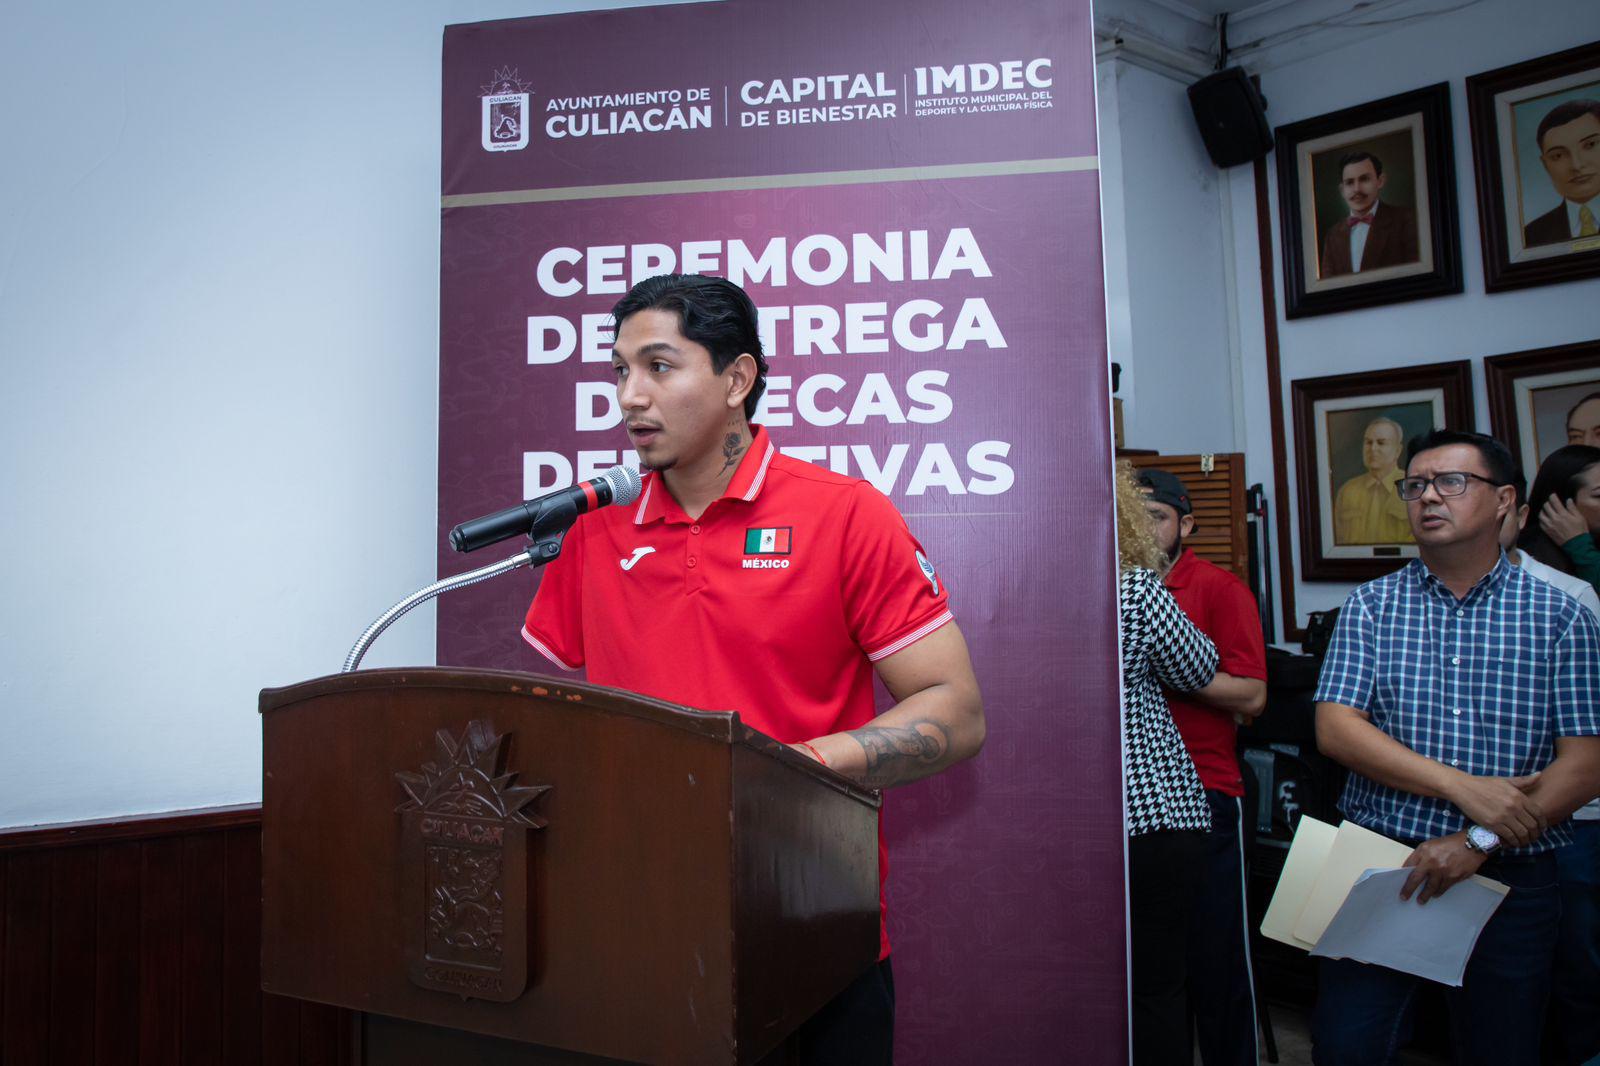 $!Ayuntamiento entrega Becas Deportivas Culiacán para atletas y entrenadores